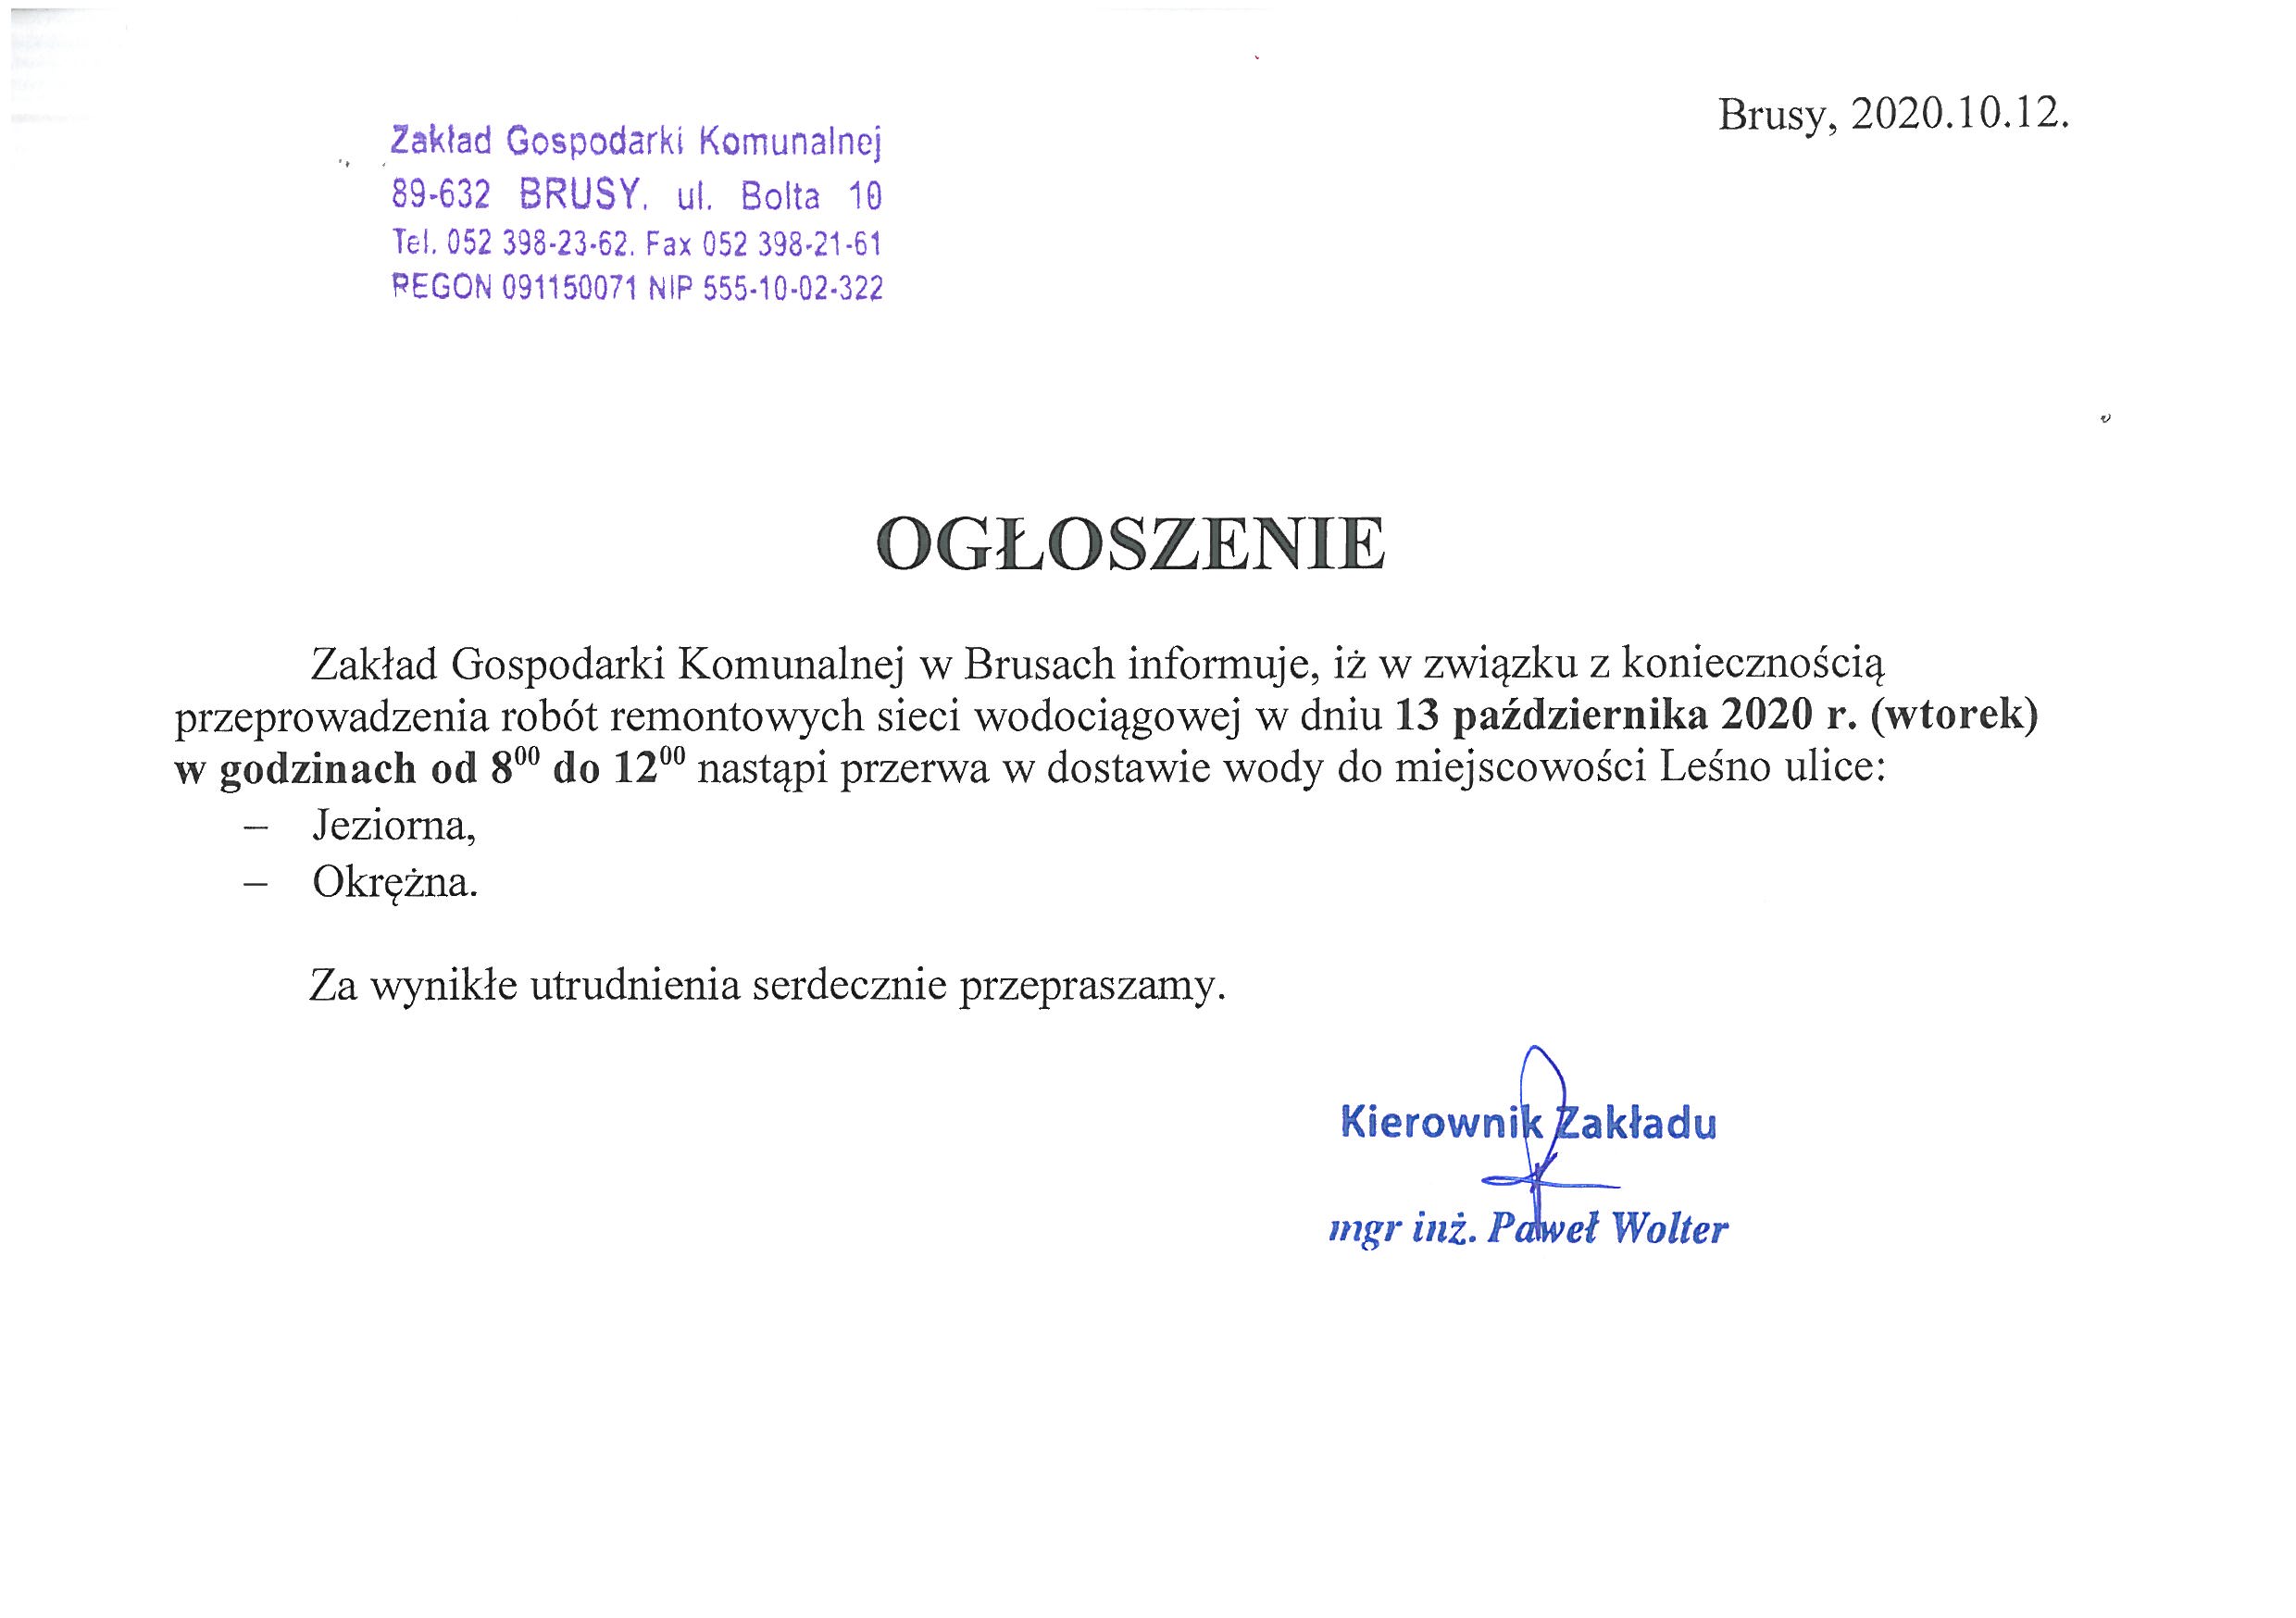 Ogłoszenie w sprawie przerwy w dostawie wody w miejscowości Leśno